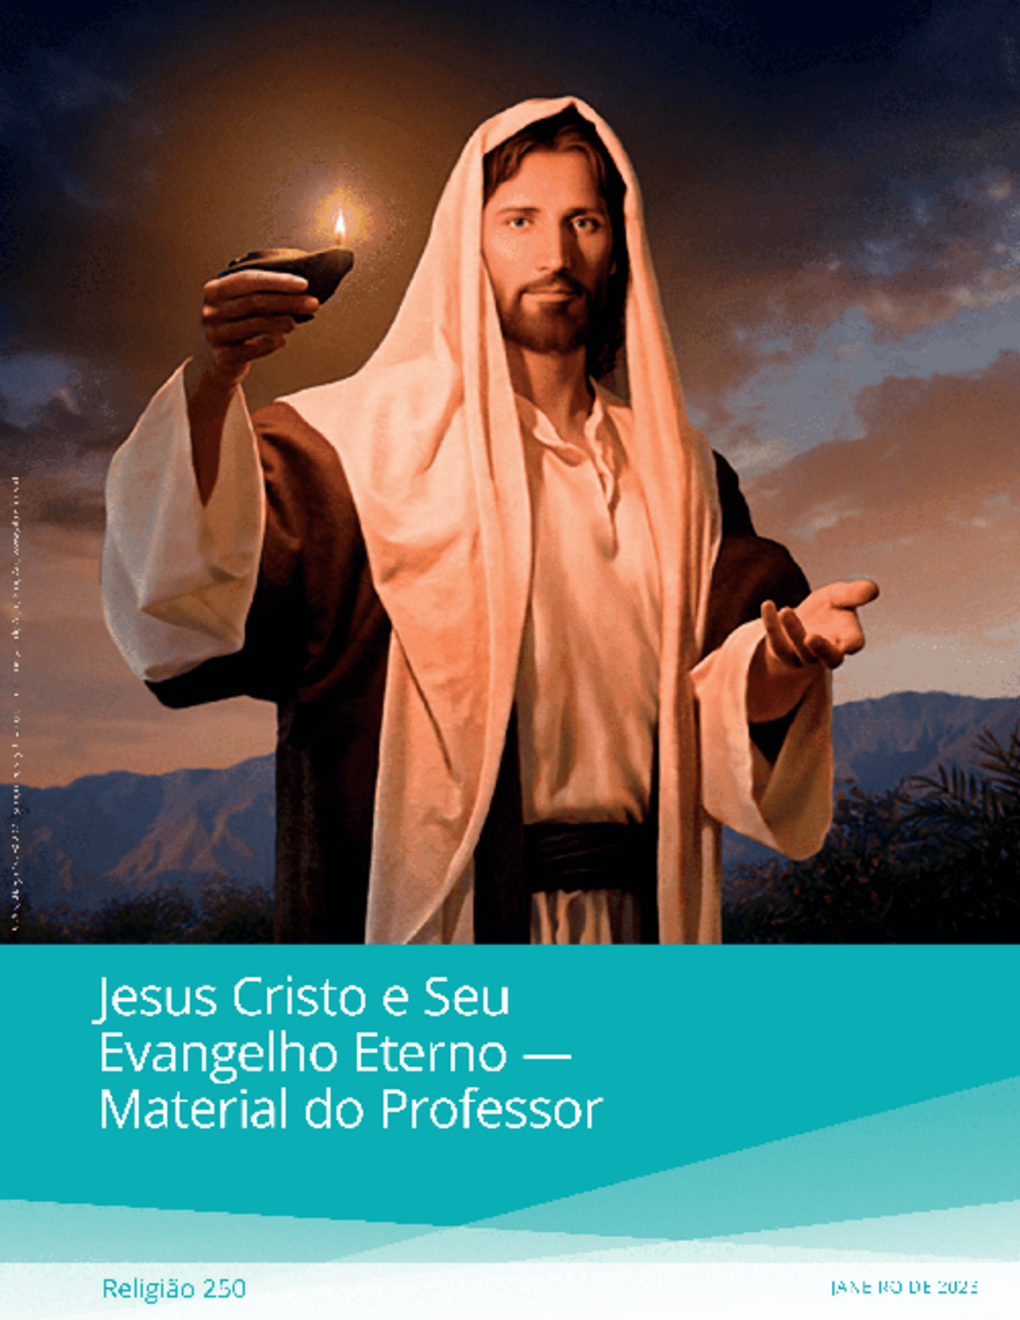 Jesus Cristo e Seu Evangelho Eterno — Material do Professor (Rel 250)